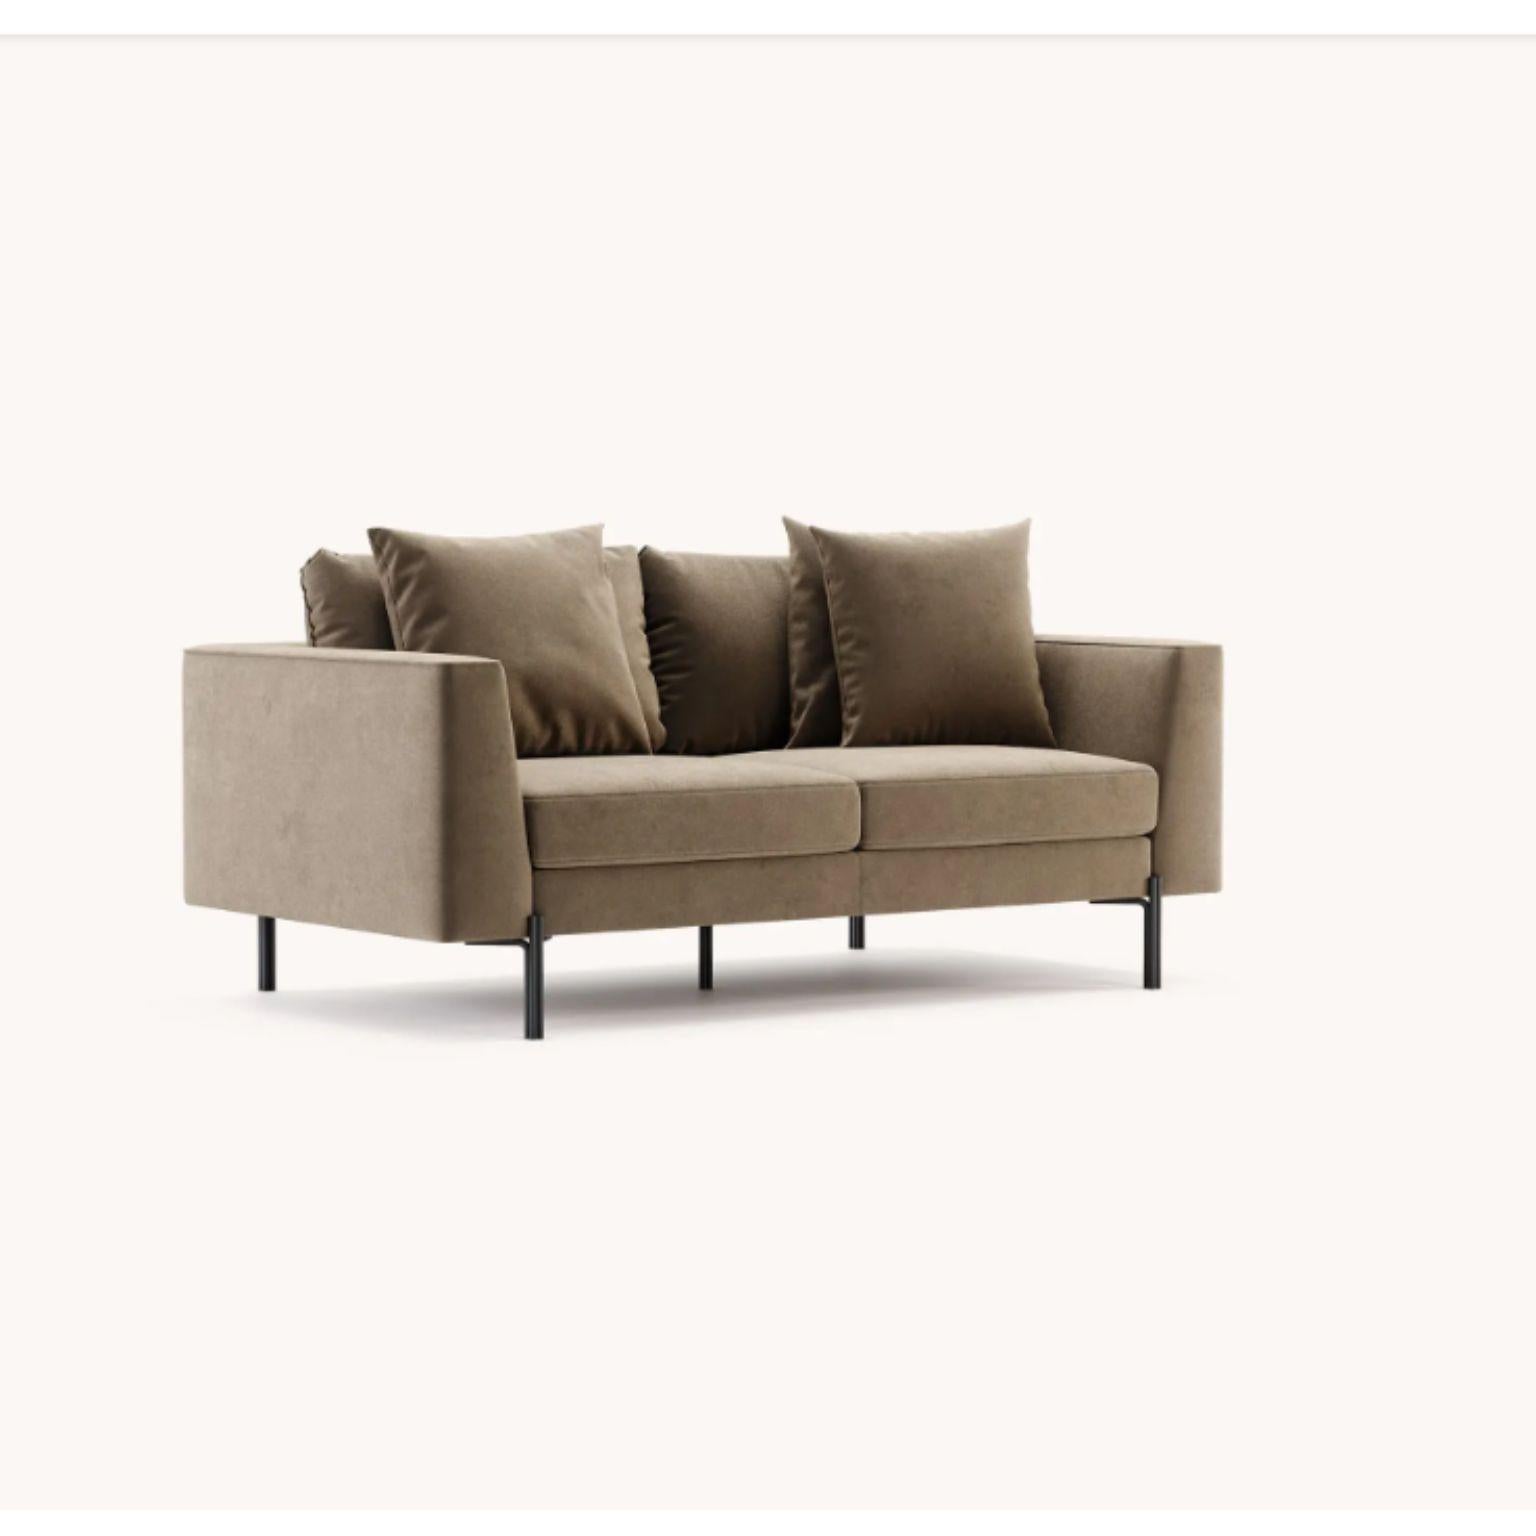 Nicole 2-Sitz-Sofa von Domkapa
MATERIALIEN: Samt (Neva 2206), schwarzer texturierter Stahl. 
Abmessungen:  B 190 x T 105 x H 90 cm.
Auch in verschiedenen MATERIALEN erhältlich. Bitte kontaktieren Sie uns.

Das britisch inspirierte Design ist das,